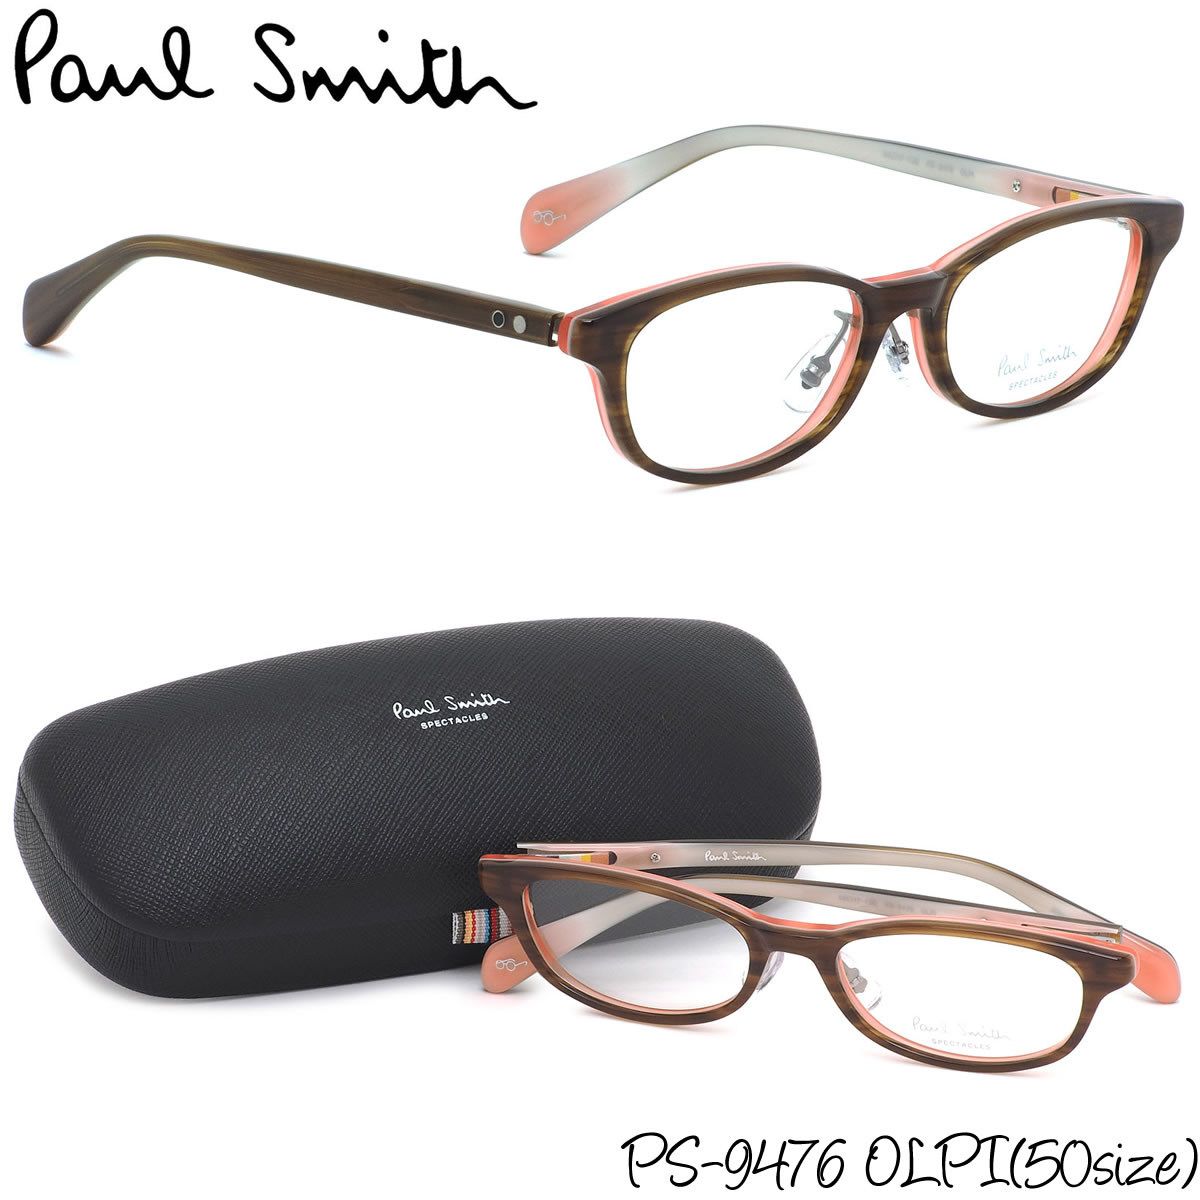 楽天市場 ポールスミス Paul Smith メガネ Ps9476 Olpi 50サイズ Paul Smith Spectacles ポールスミススペクタクルズ スクエア 二色 二層 ピンク 木目 ホワイト ポールスミスpaulsmith メンズ レディース メガネ サングラスのthat S